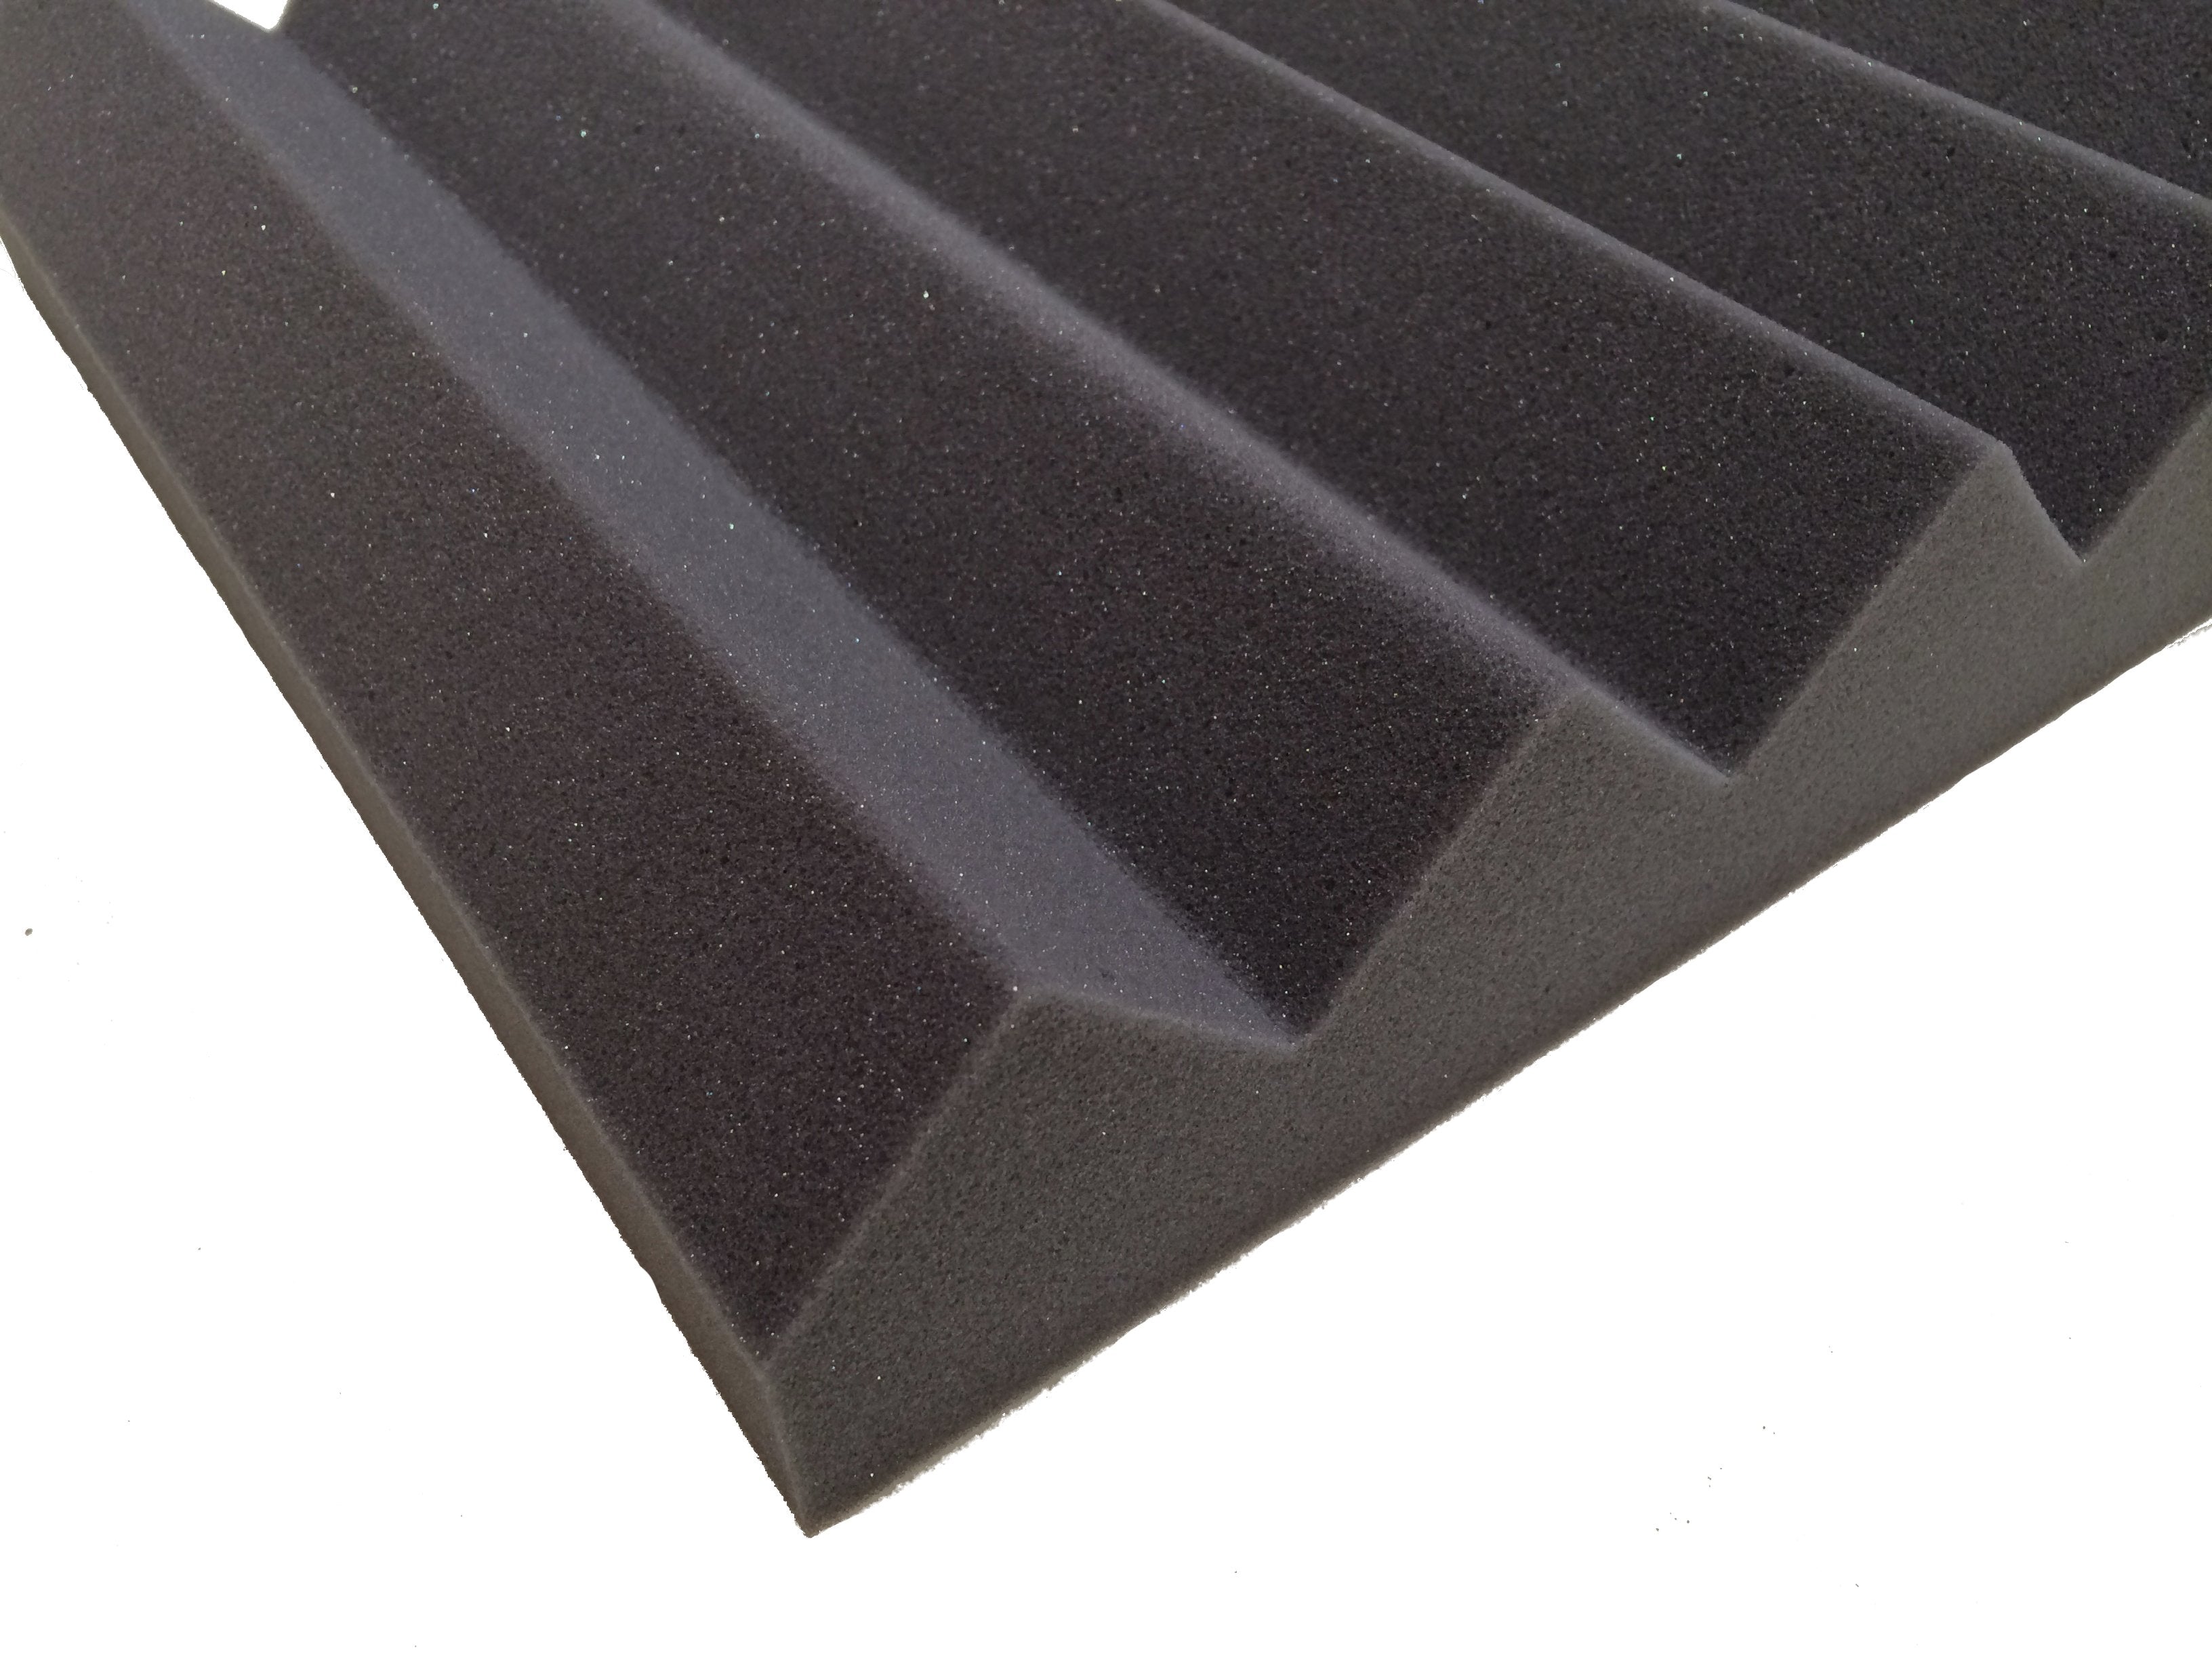 Wedge PRO 30"x15" Acoustic Studio Foam Tile Kit - Advanced Acoustics